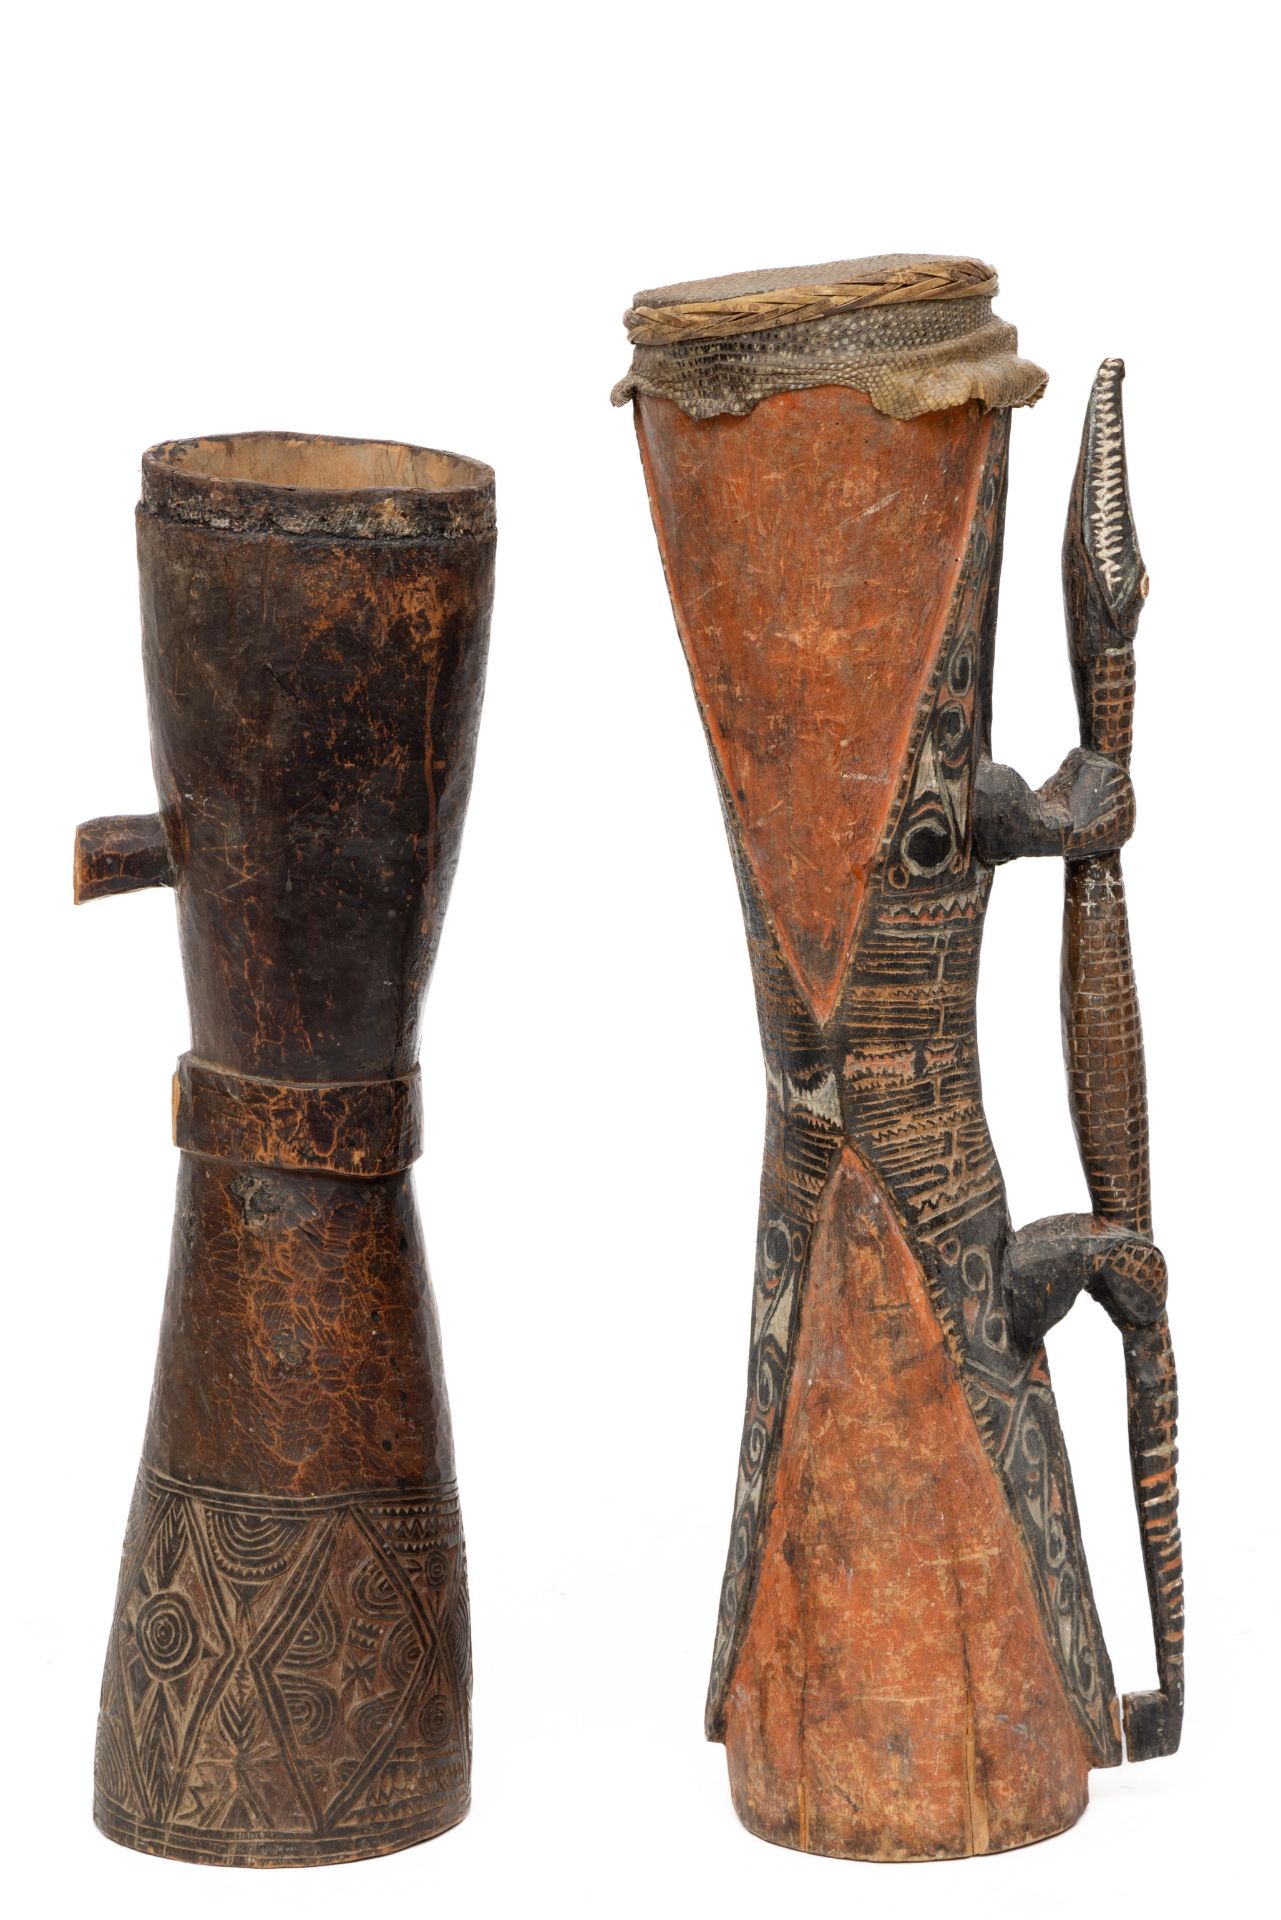 P.N. Guinea, a Sepik drum - Image 2 of 2